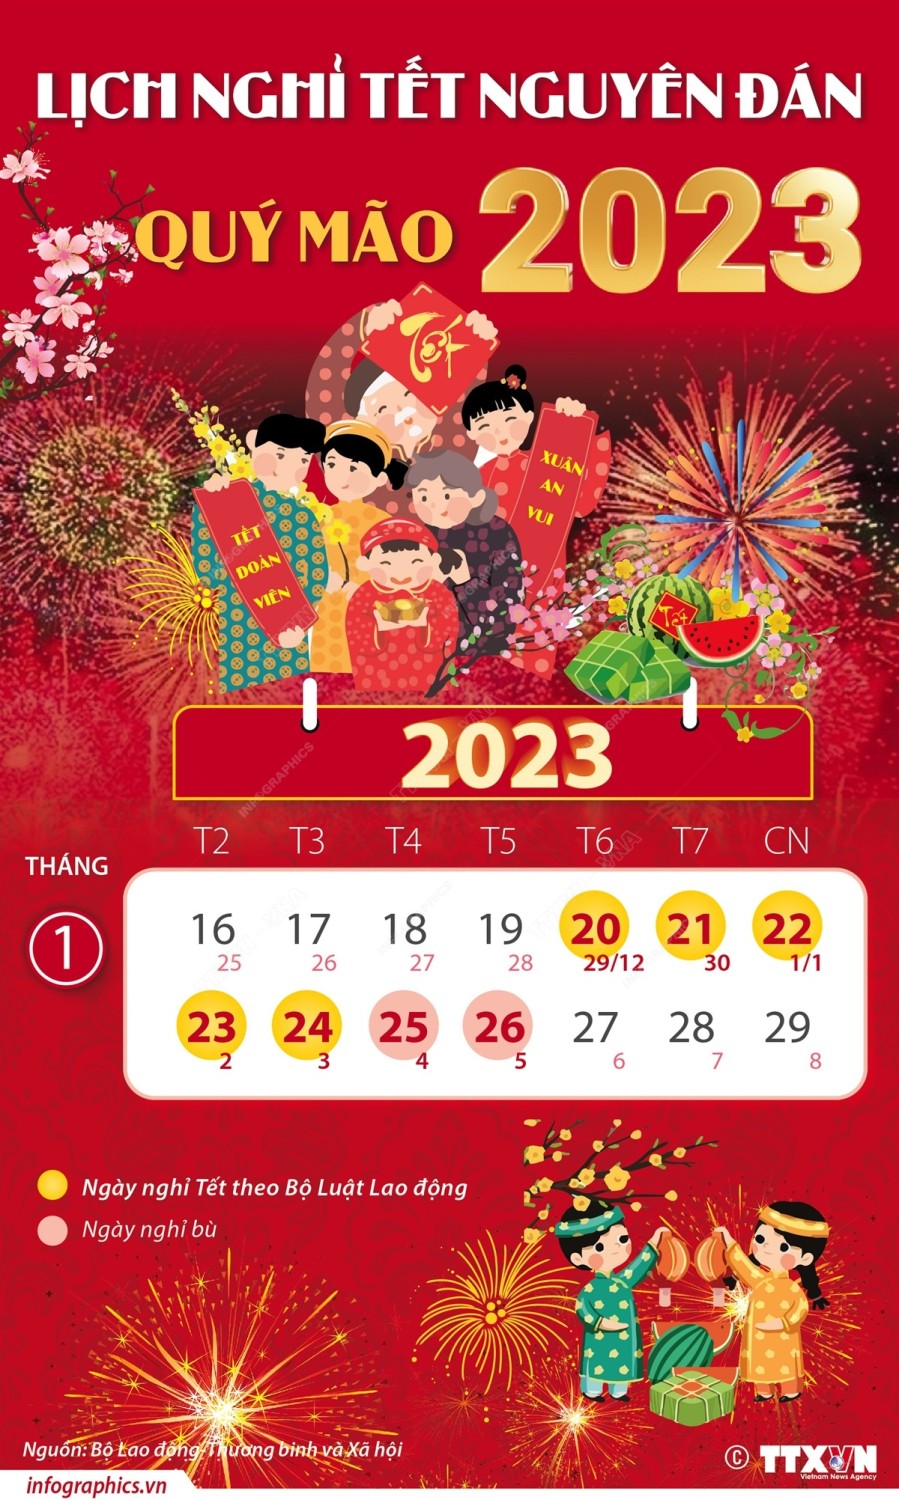 Lịch nghỉ tết Dương lịch và tết Nguyên đán năm 2023.